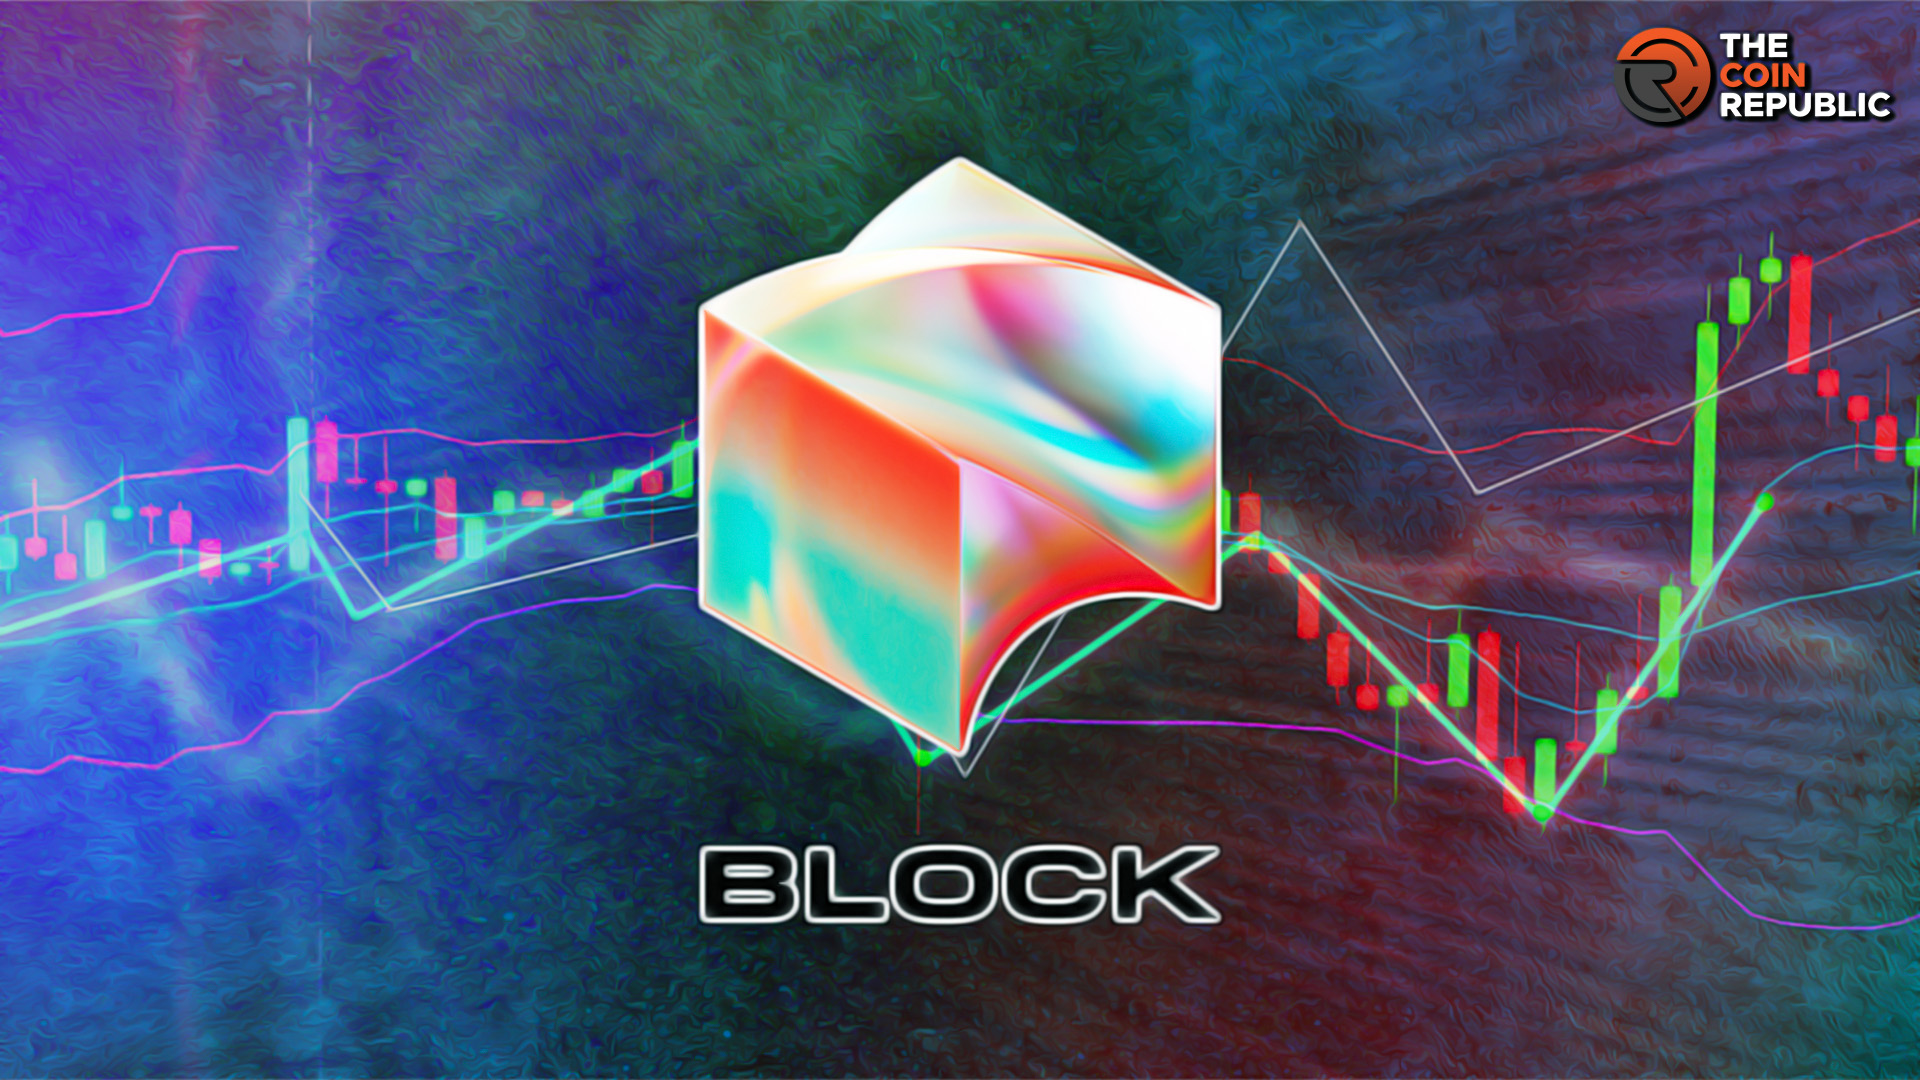 Block Stock Price Analysis: SQ Stock Brokedown $50; What Next?